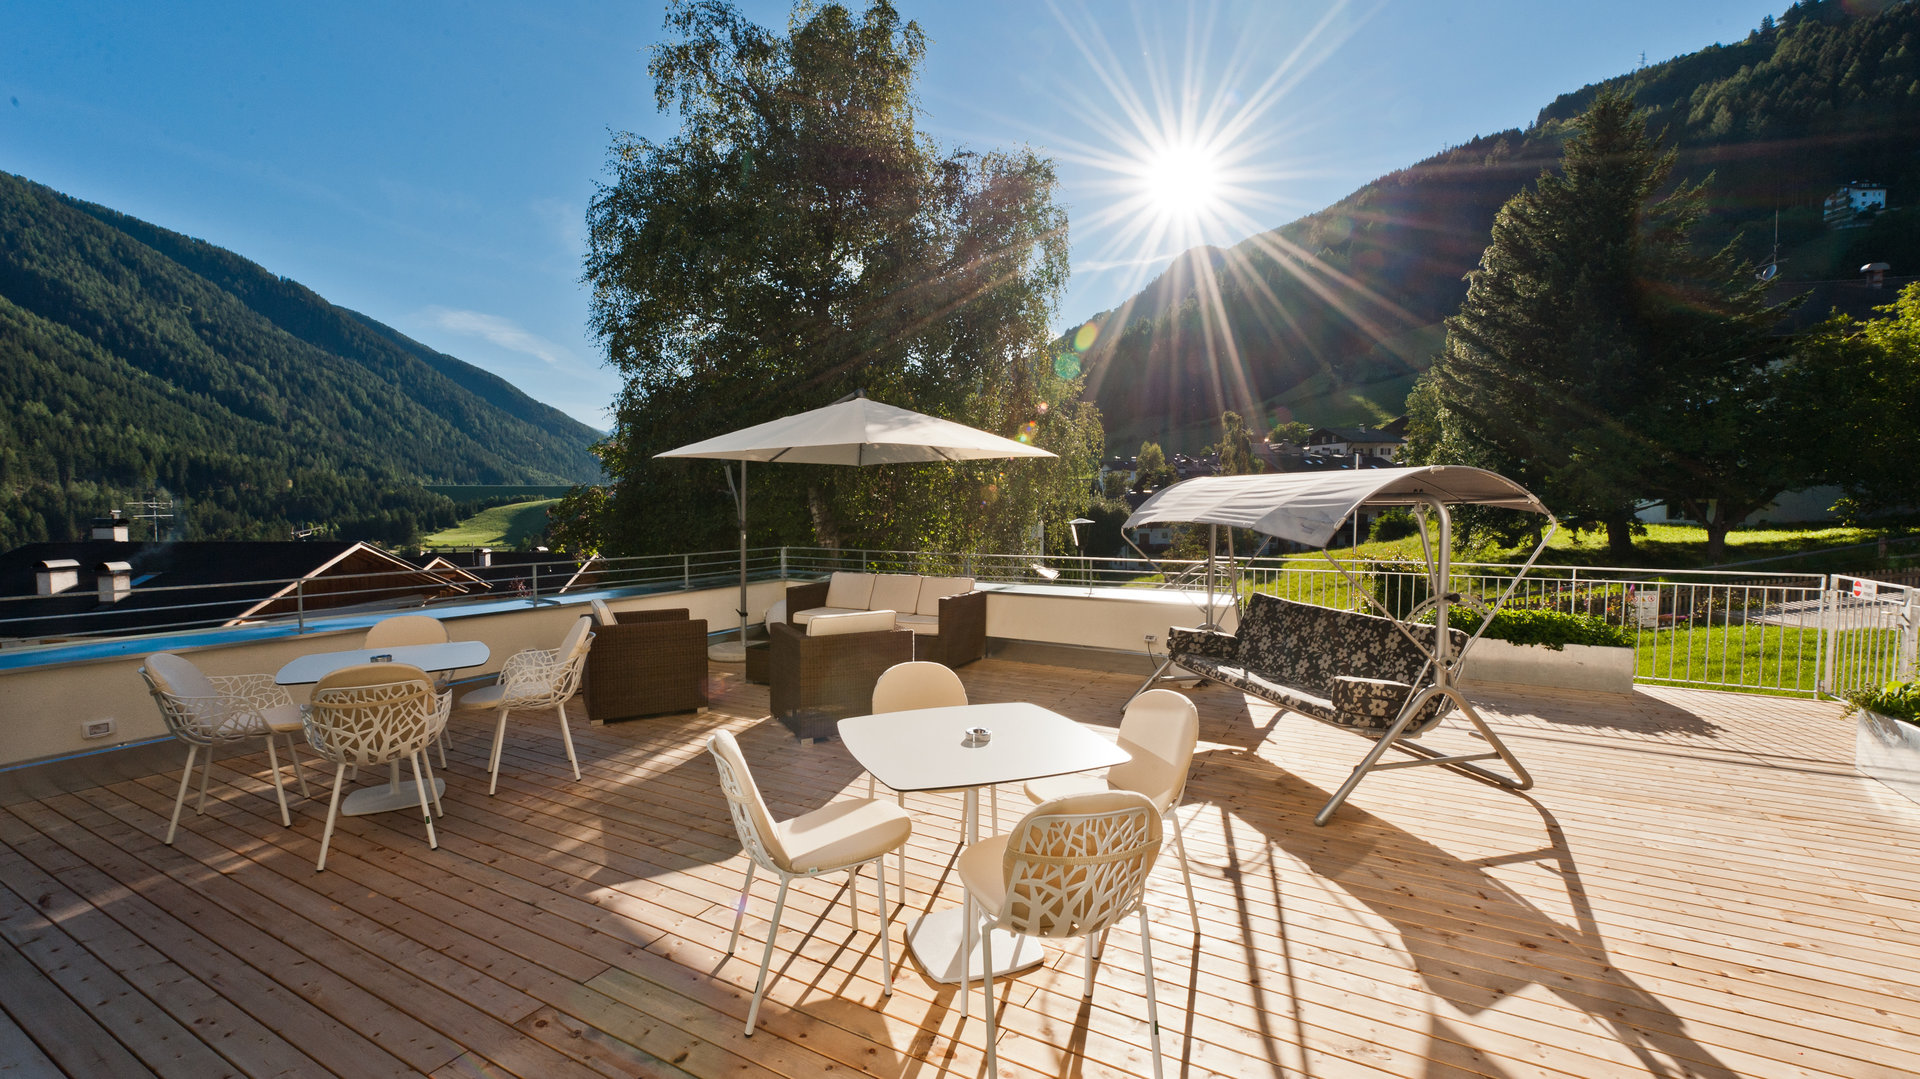 Zentral, ruhig uns sonnig gelegenes Hotel im Ultental (Südtirol) mit Sonnenterrasse, Garten, Freischwimmbad, Wellnessbereich und Blick auf die Berge.